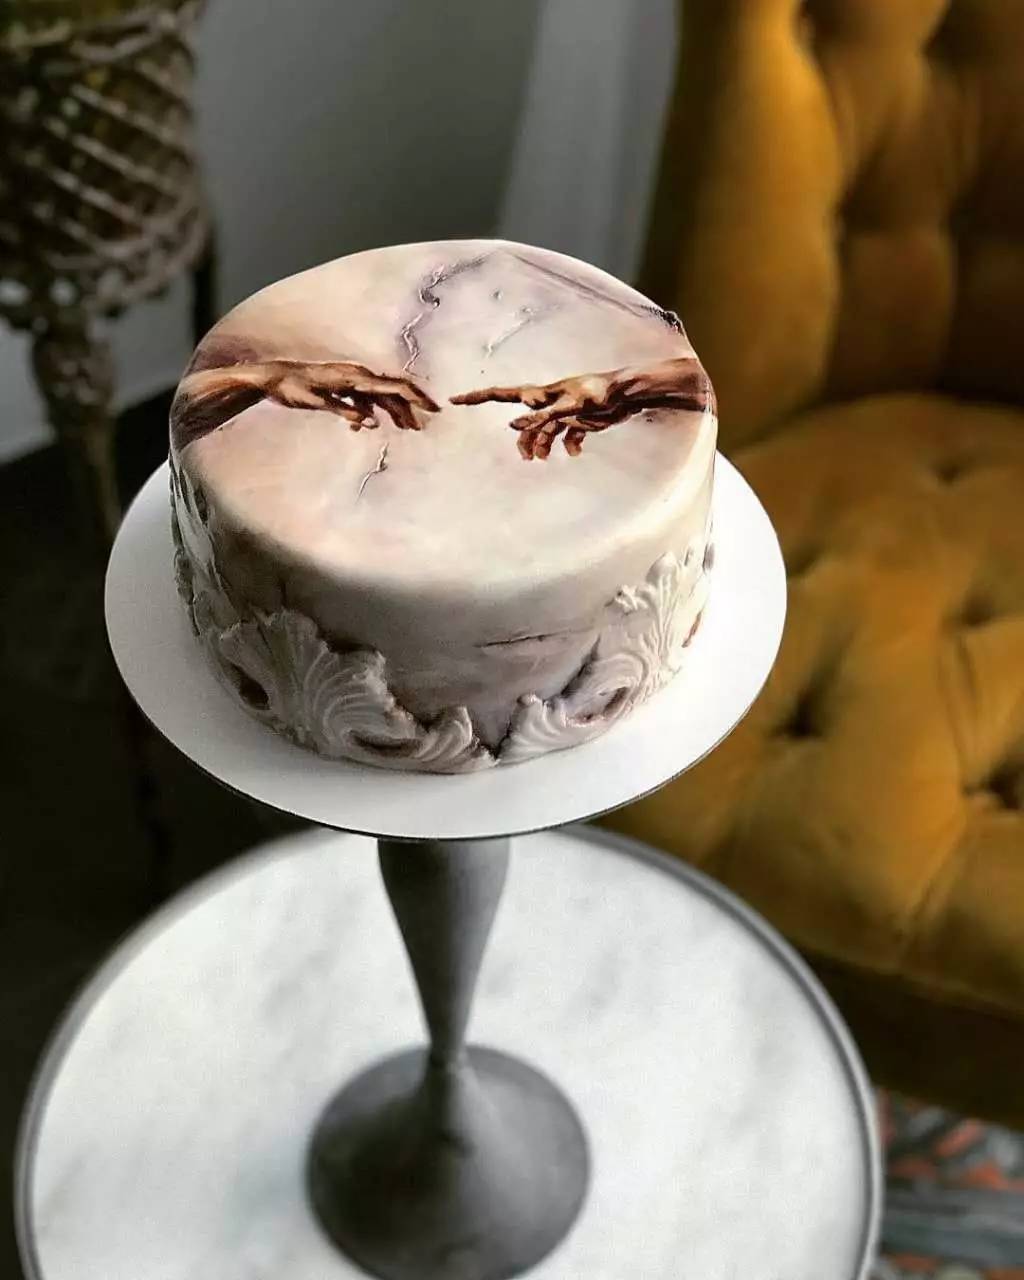 这些独一无二的,欧美风格的艺术蛋糕,漂亮的无法直视了